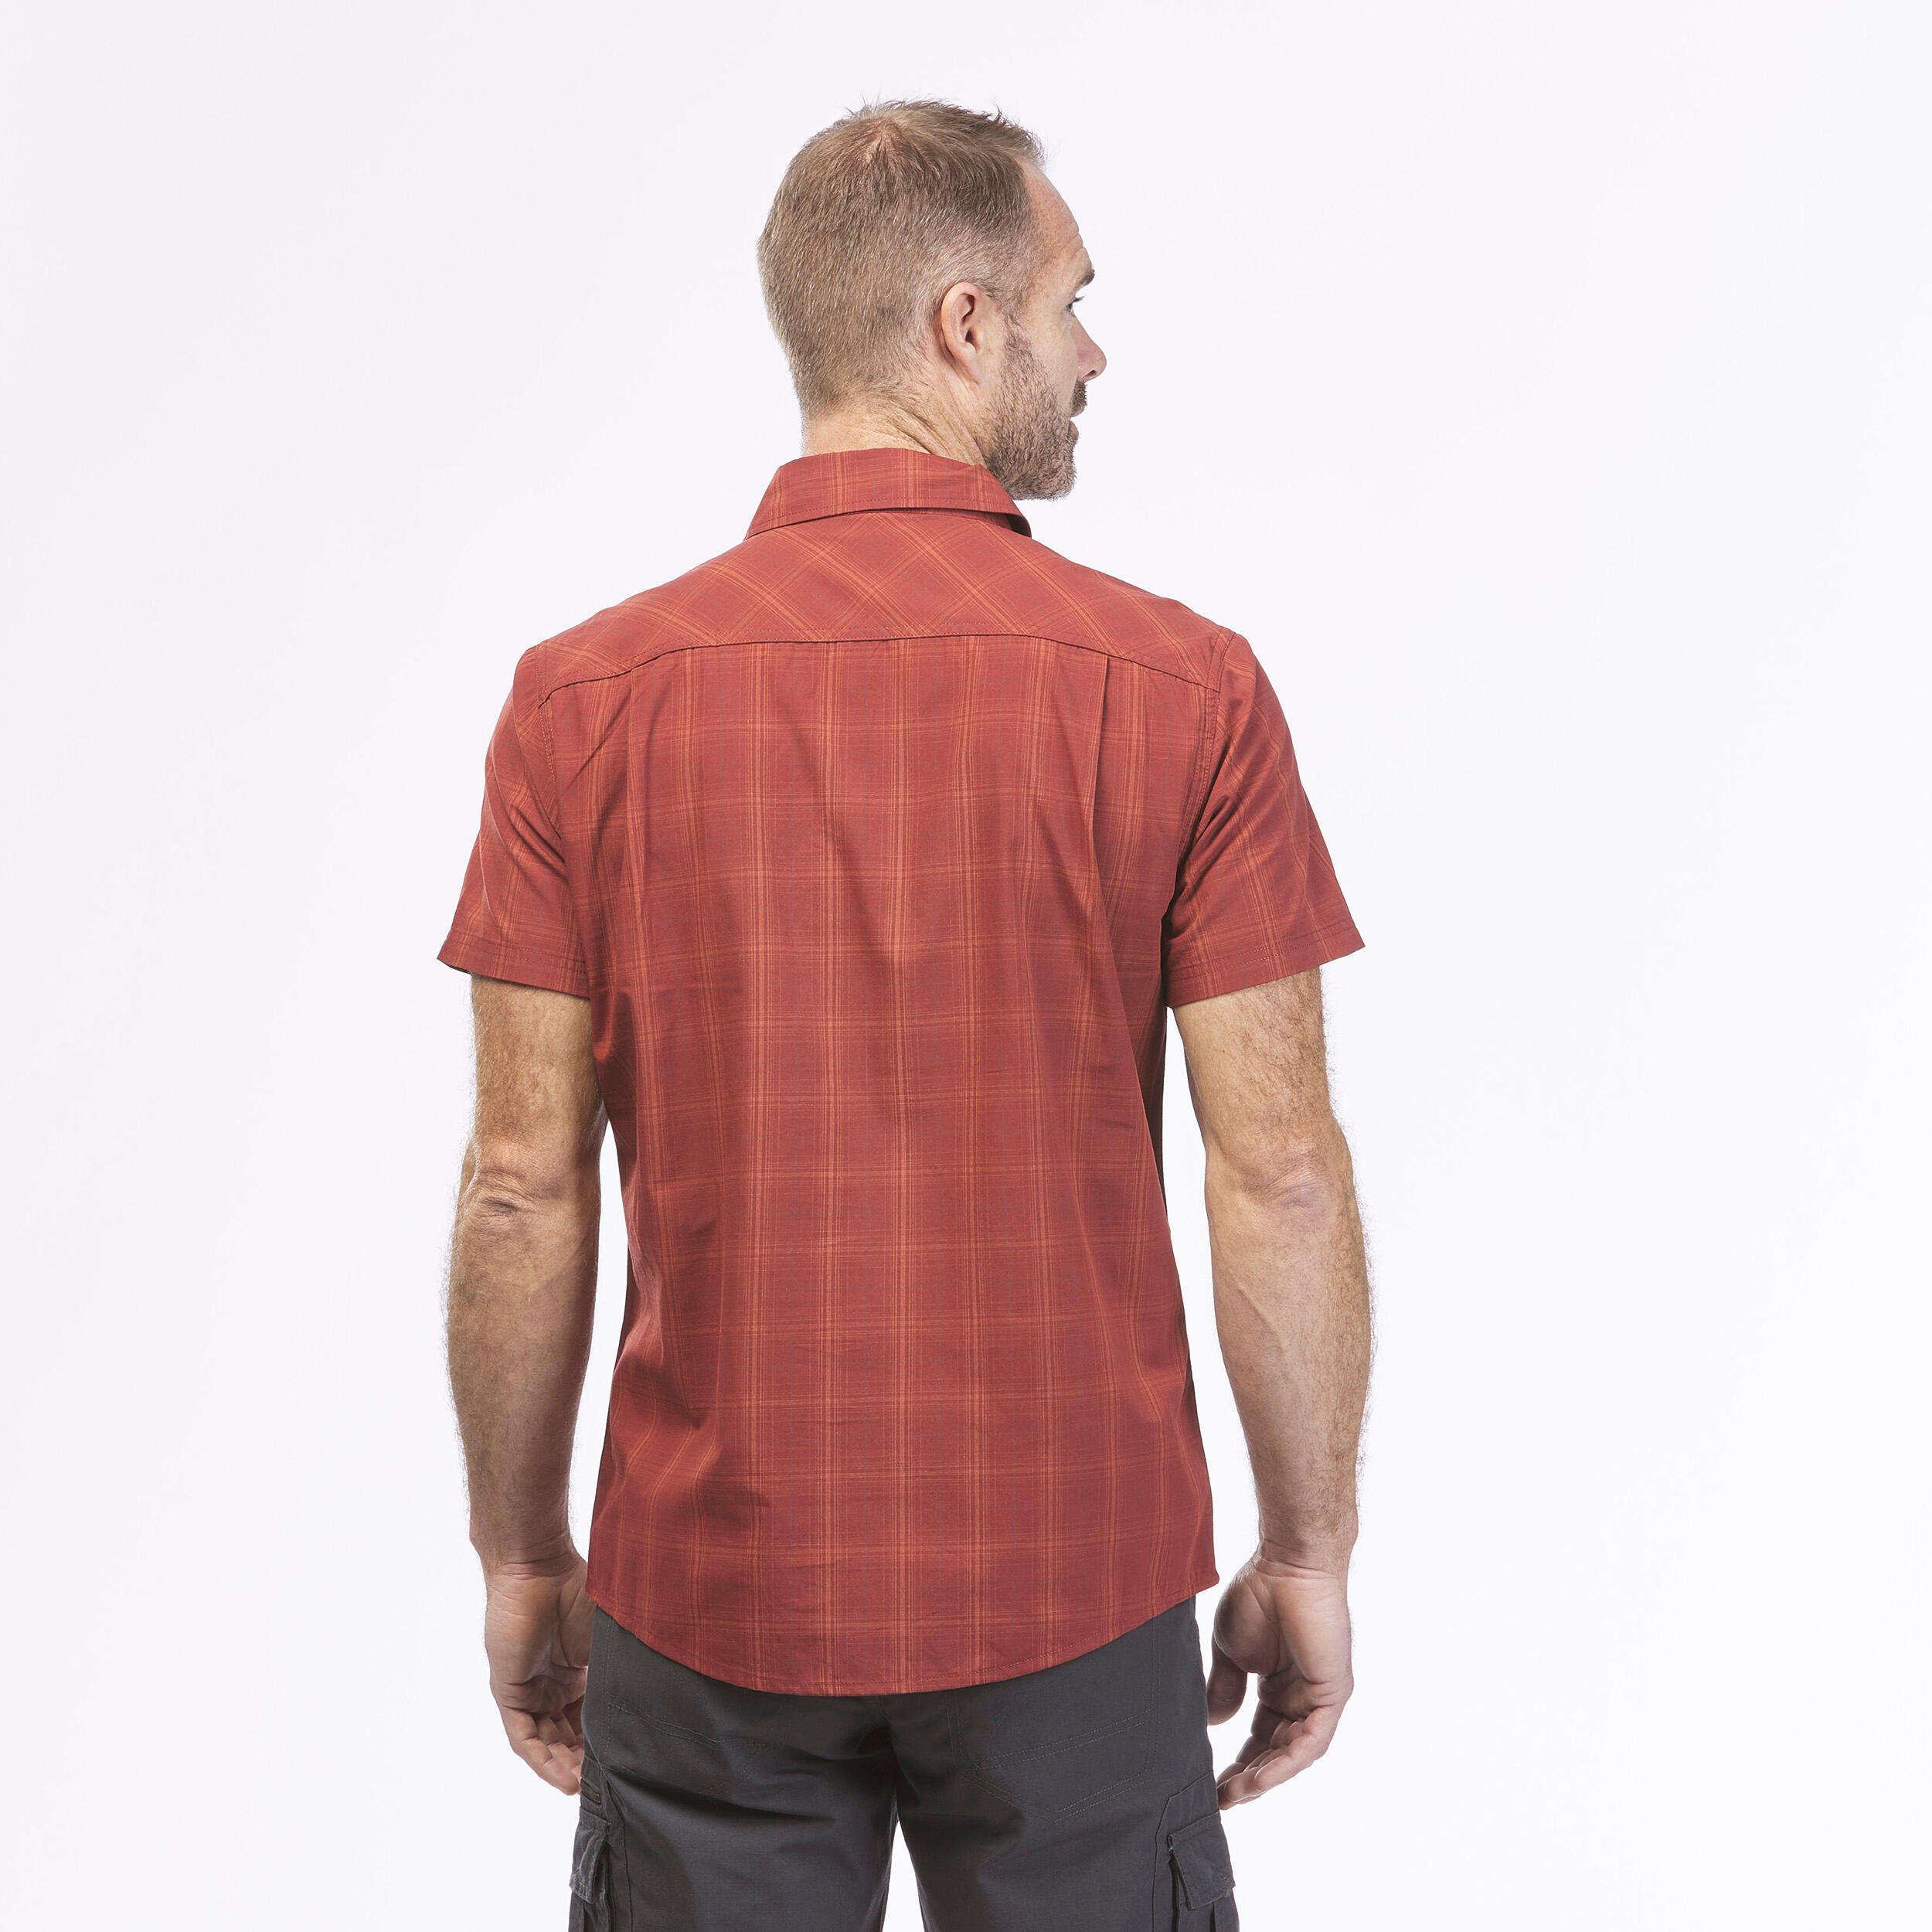 Men’s short-sleeved plan travel trekking shirt TRAVEL 100 red 2/7